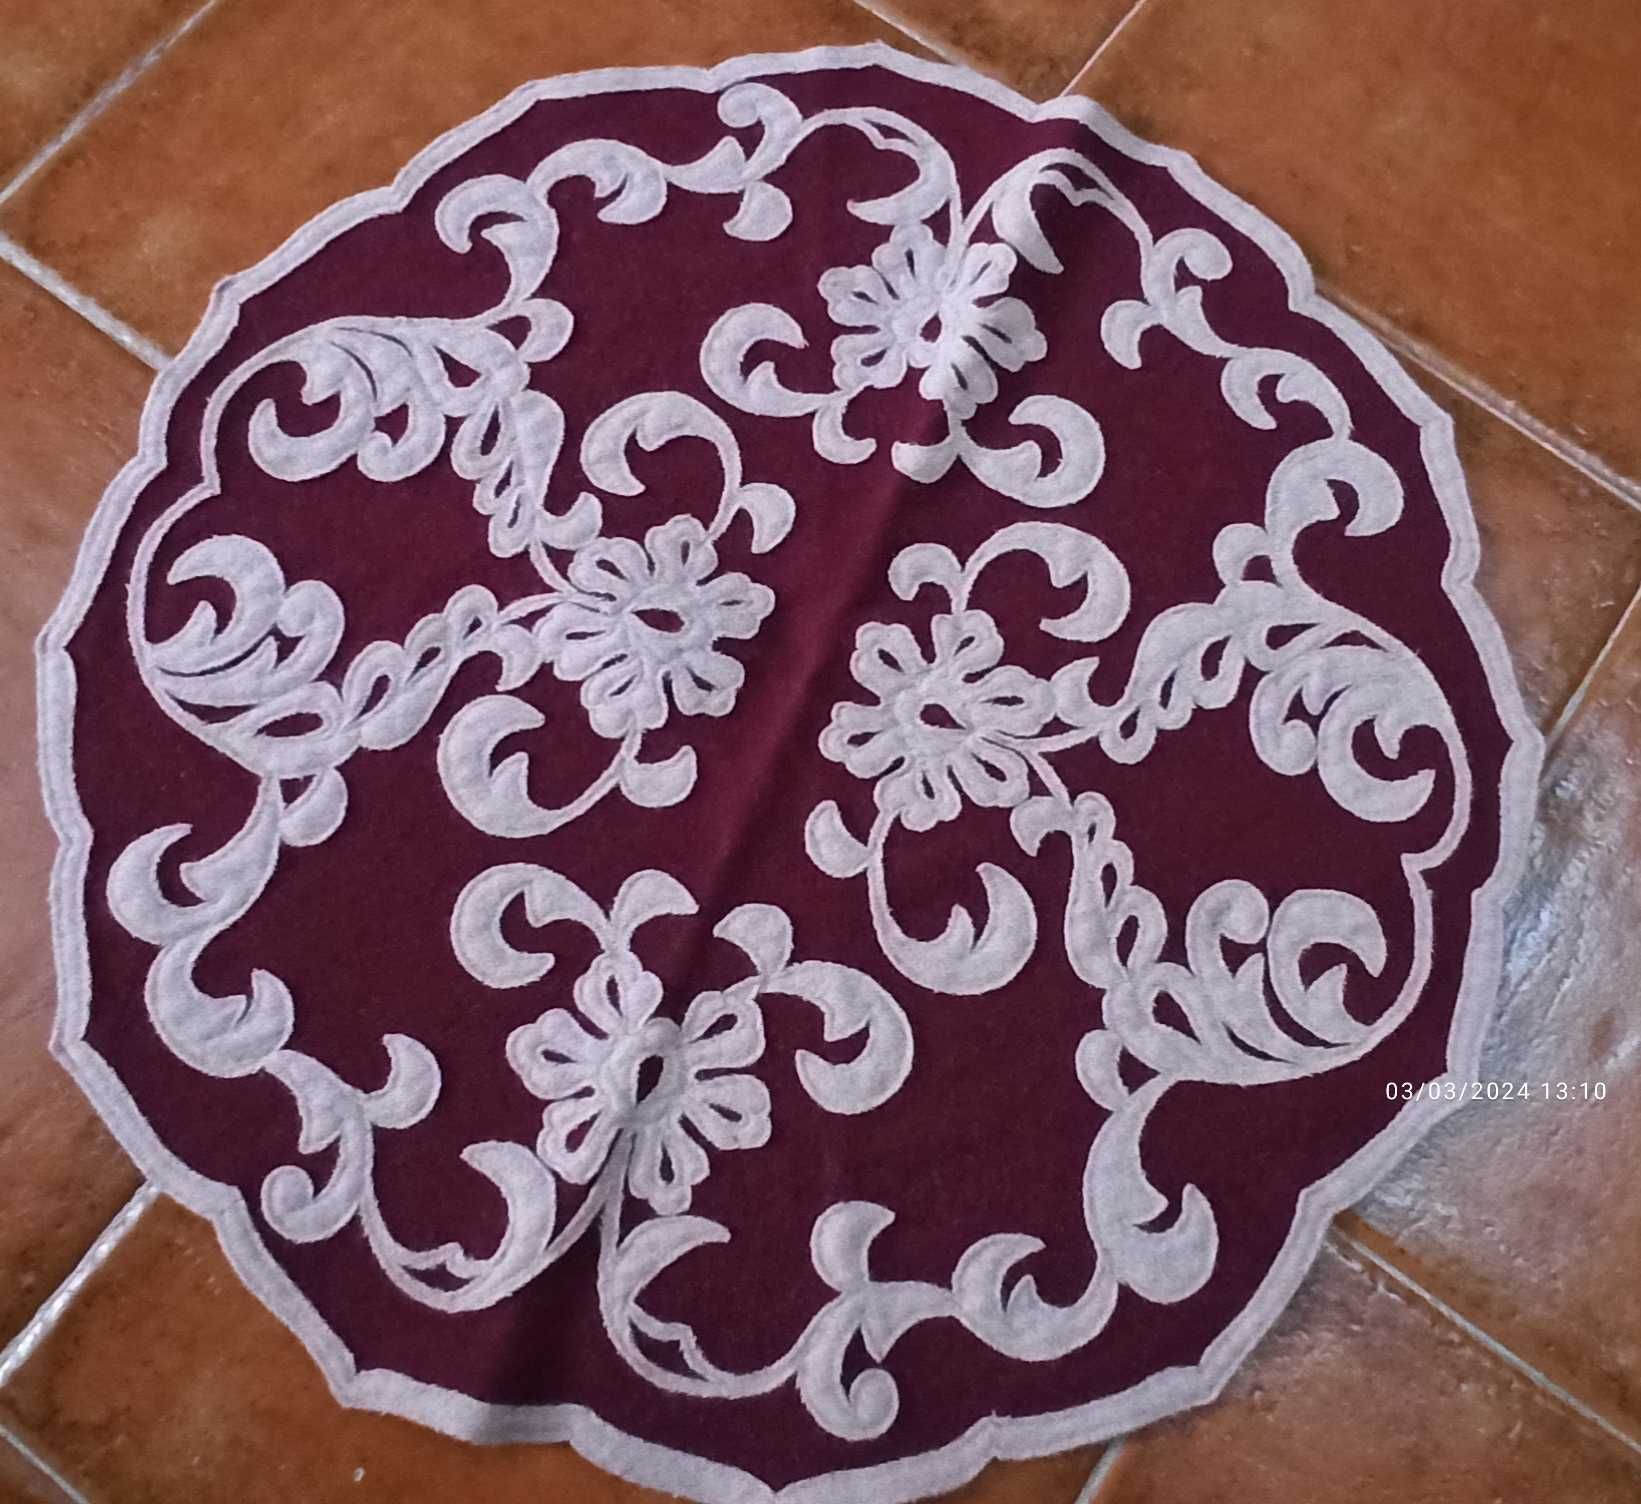 Pano Camilha Redondo, com bordado tradicional de Nisa, artesanal